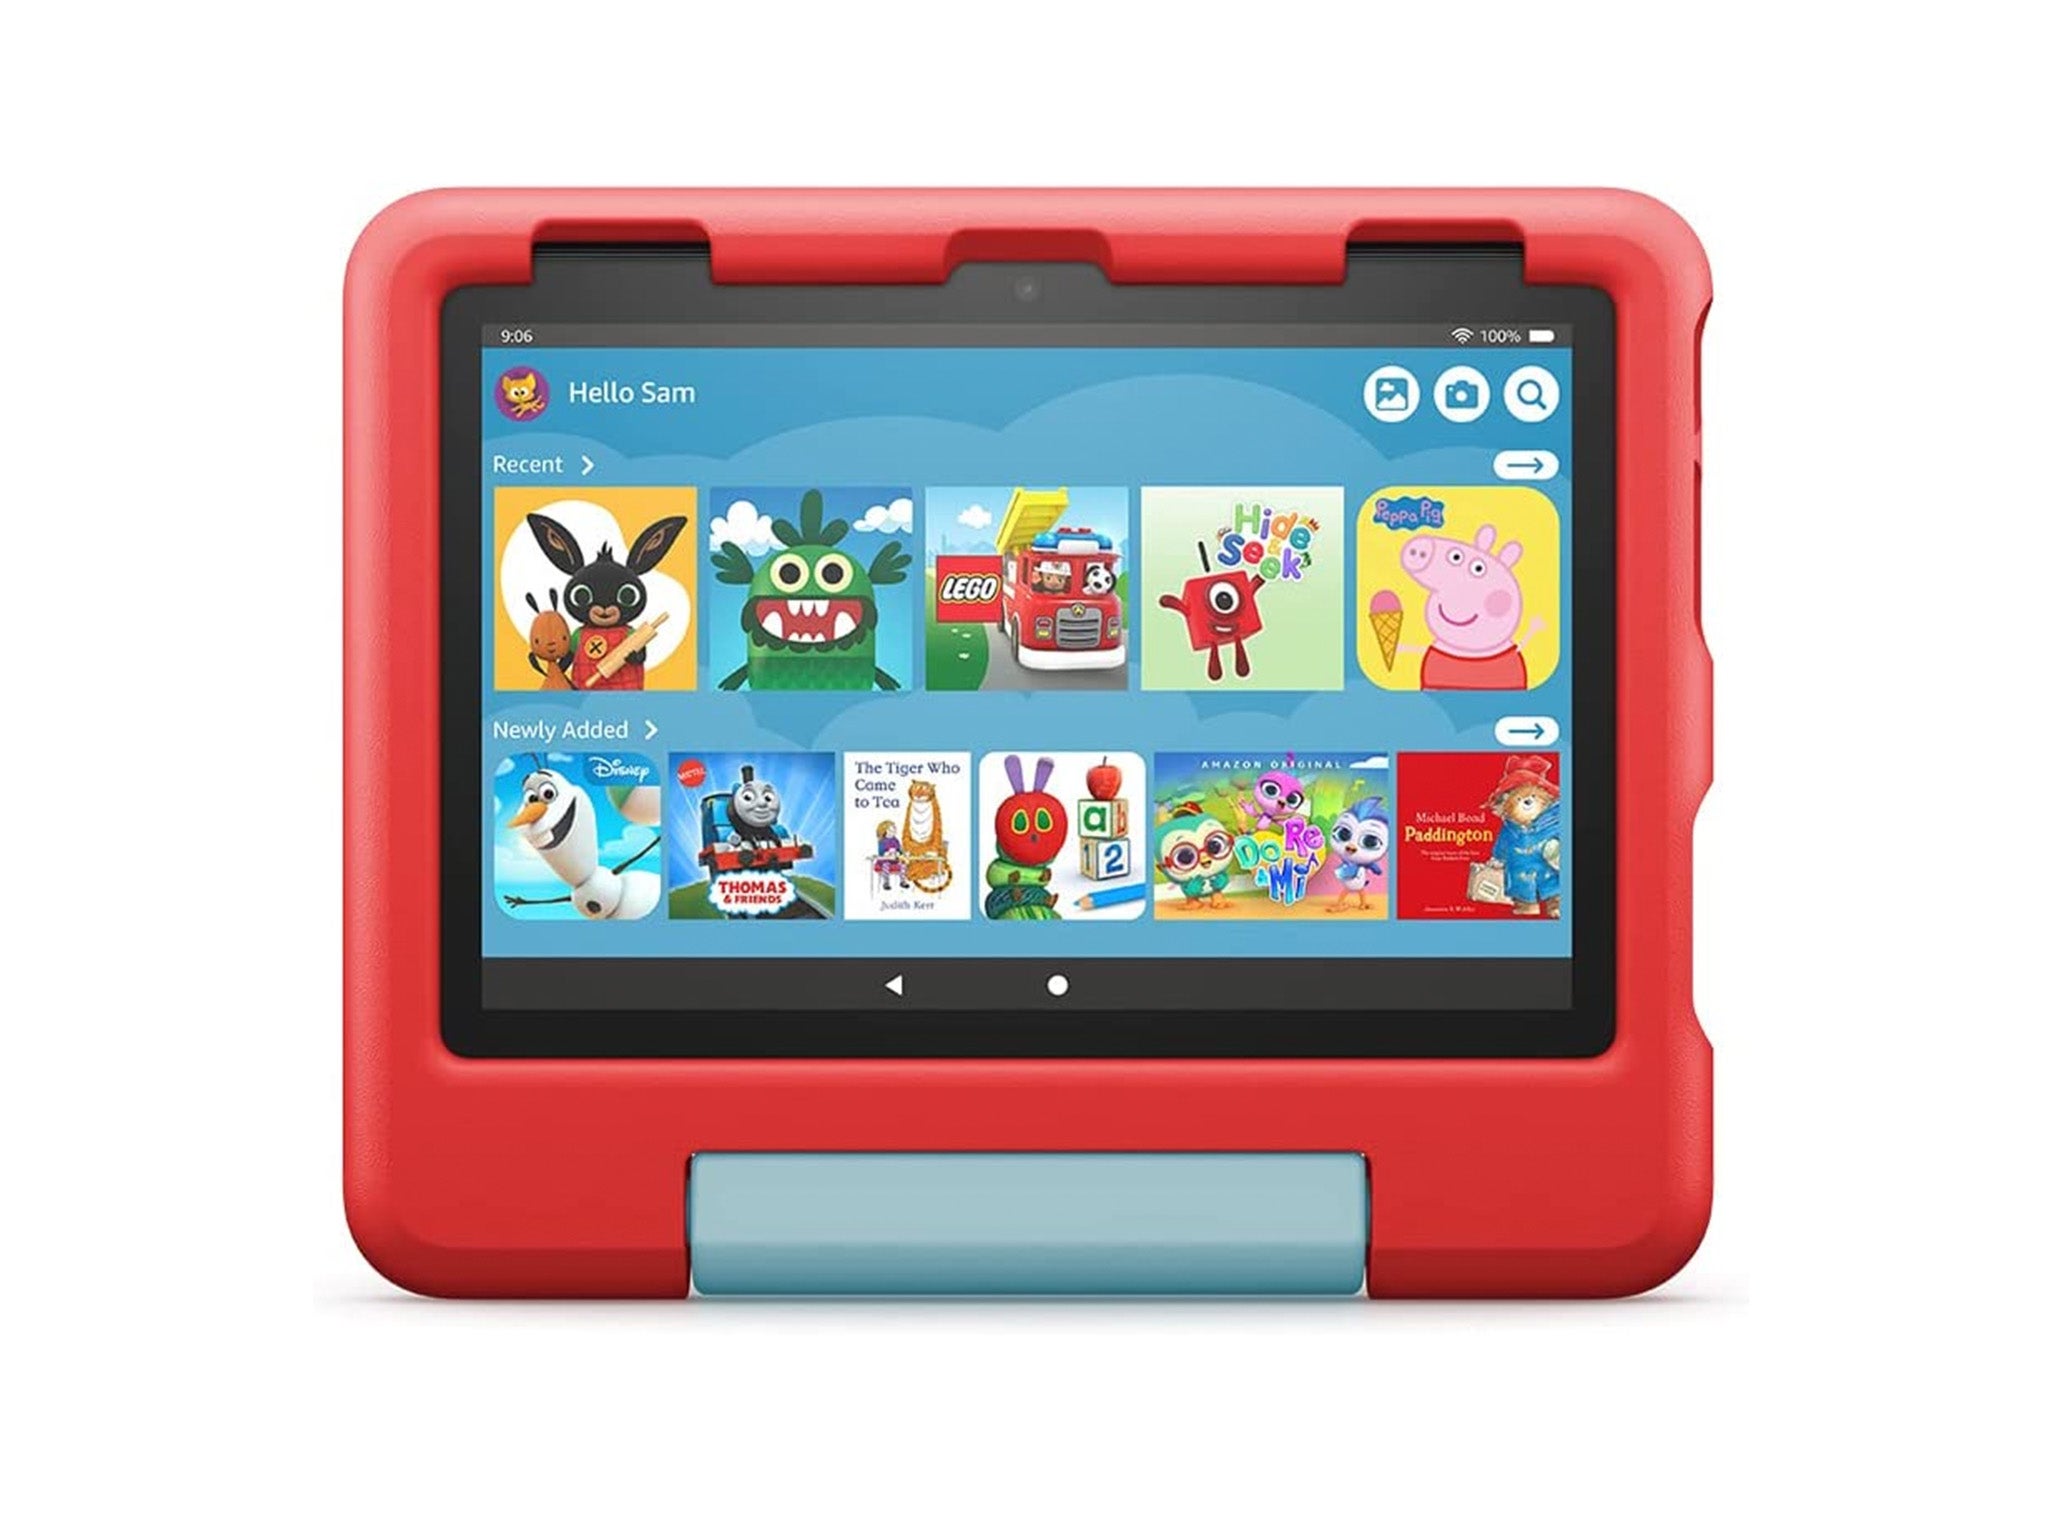 Amazon Fire HD 8 kids tablet